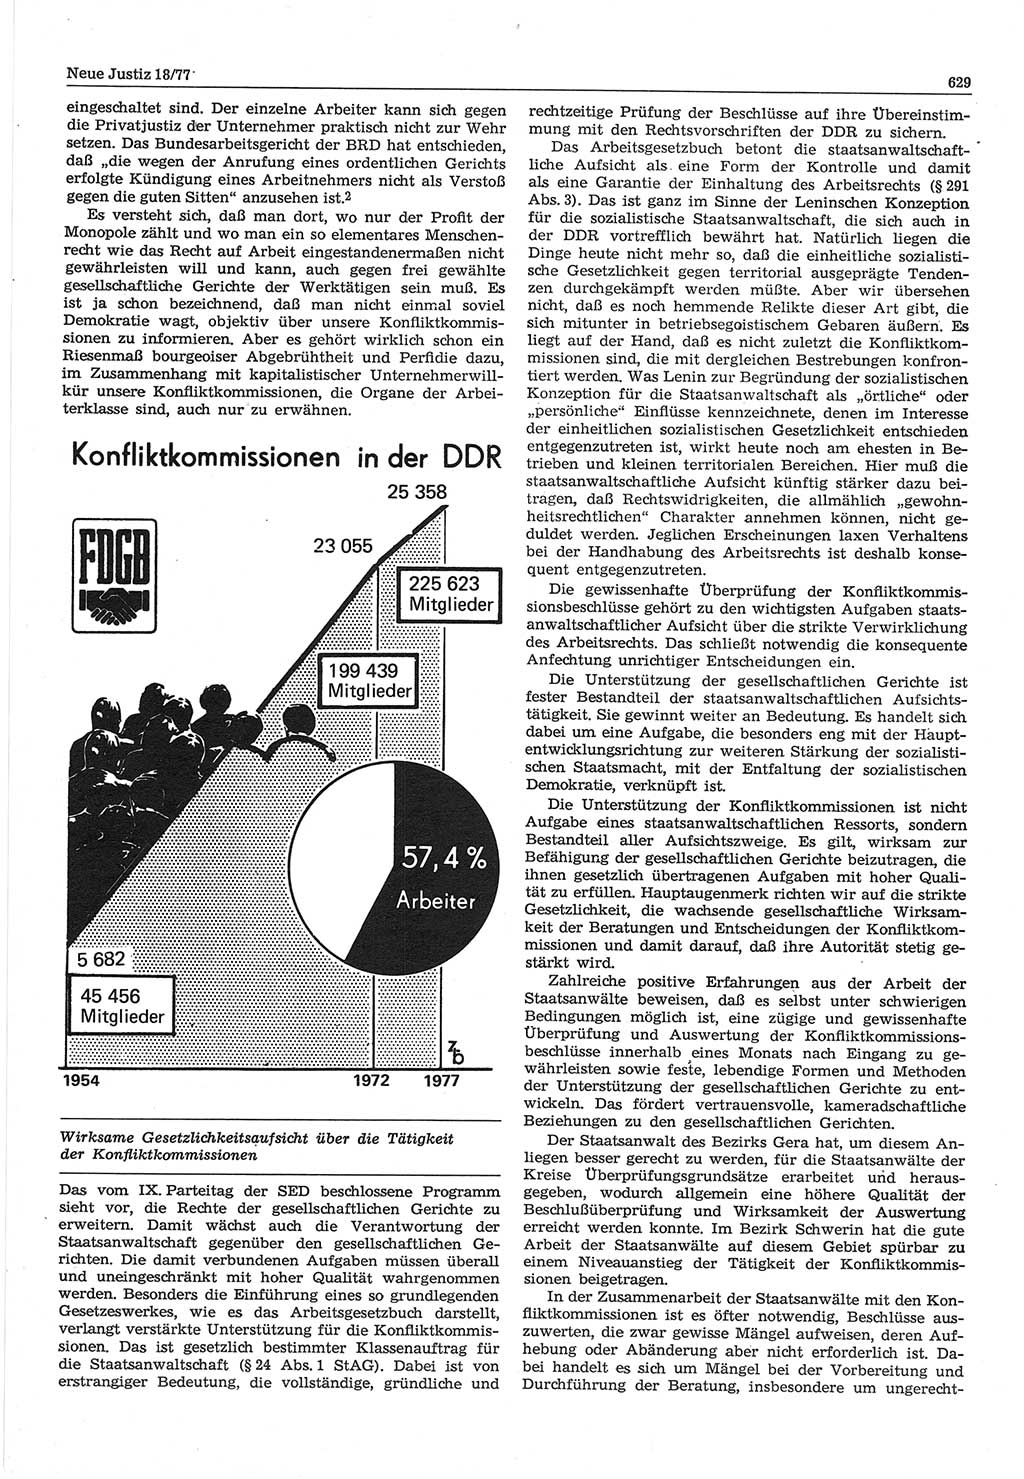 Neue Justiz (NJ), Zeitschrift für Recht und Rechtswissenschaft-Zeitschrift, sozialistisches Recht und Gesetzlichkeit, 31. Jahrgang 1977, Seite 629 (NJ DDR 1977, S. 629)